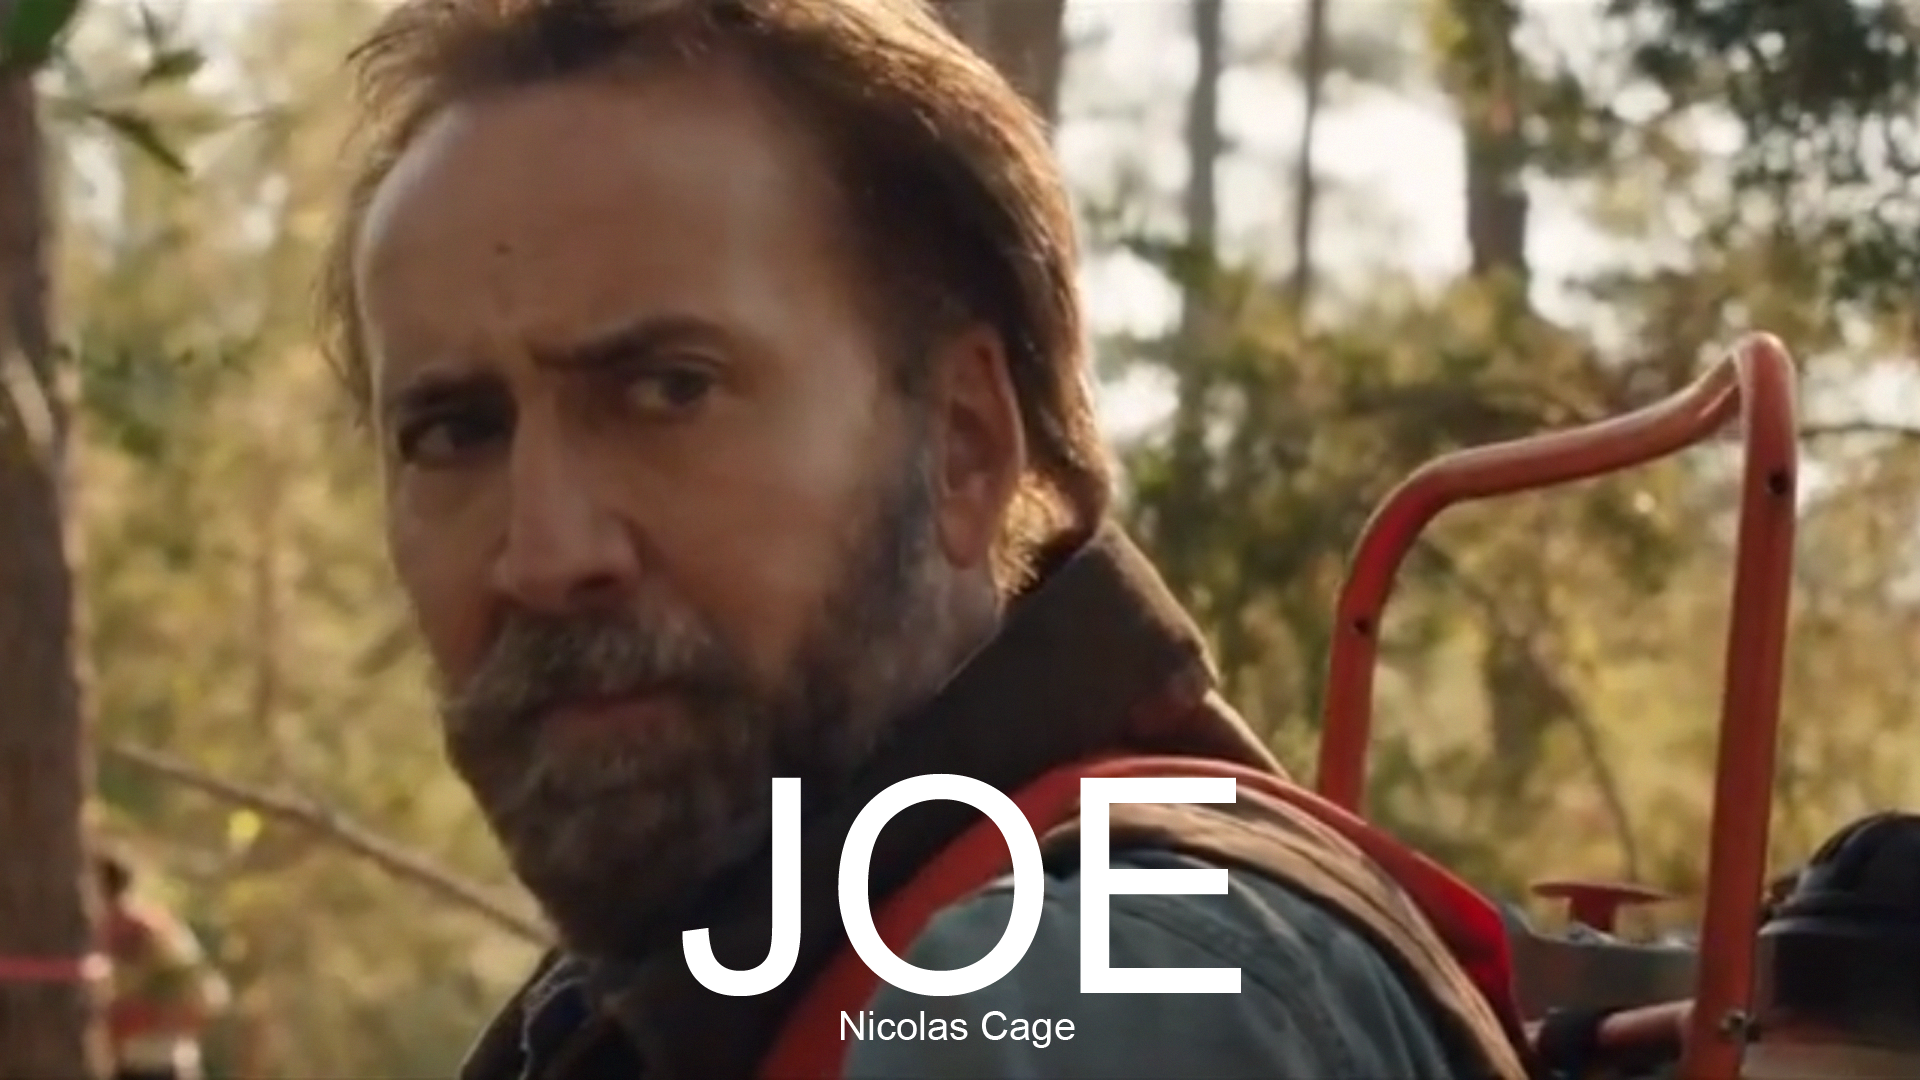 Joe Movie Nicolas Cage Wallpaper Hiresmoall